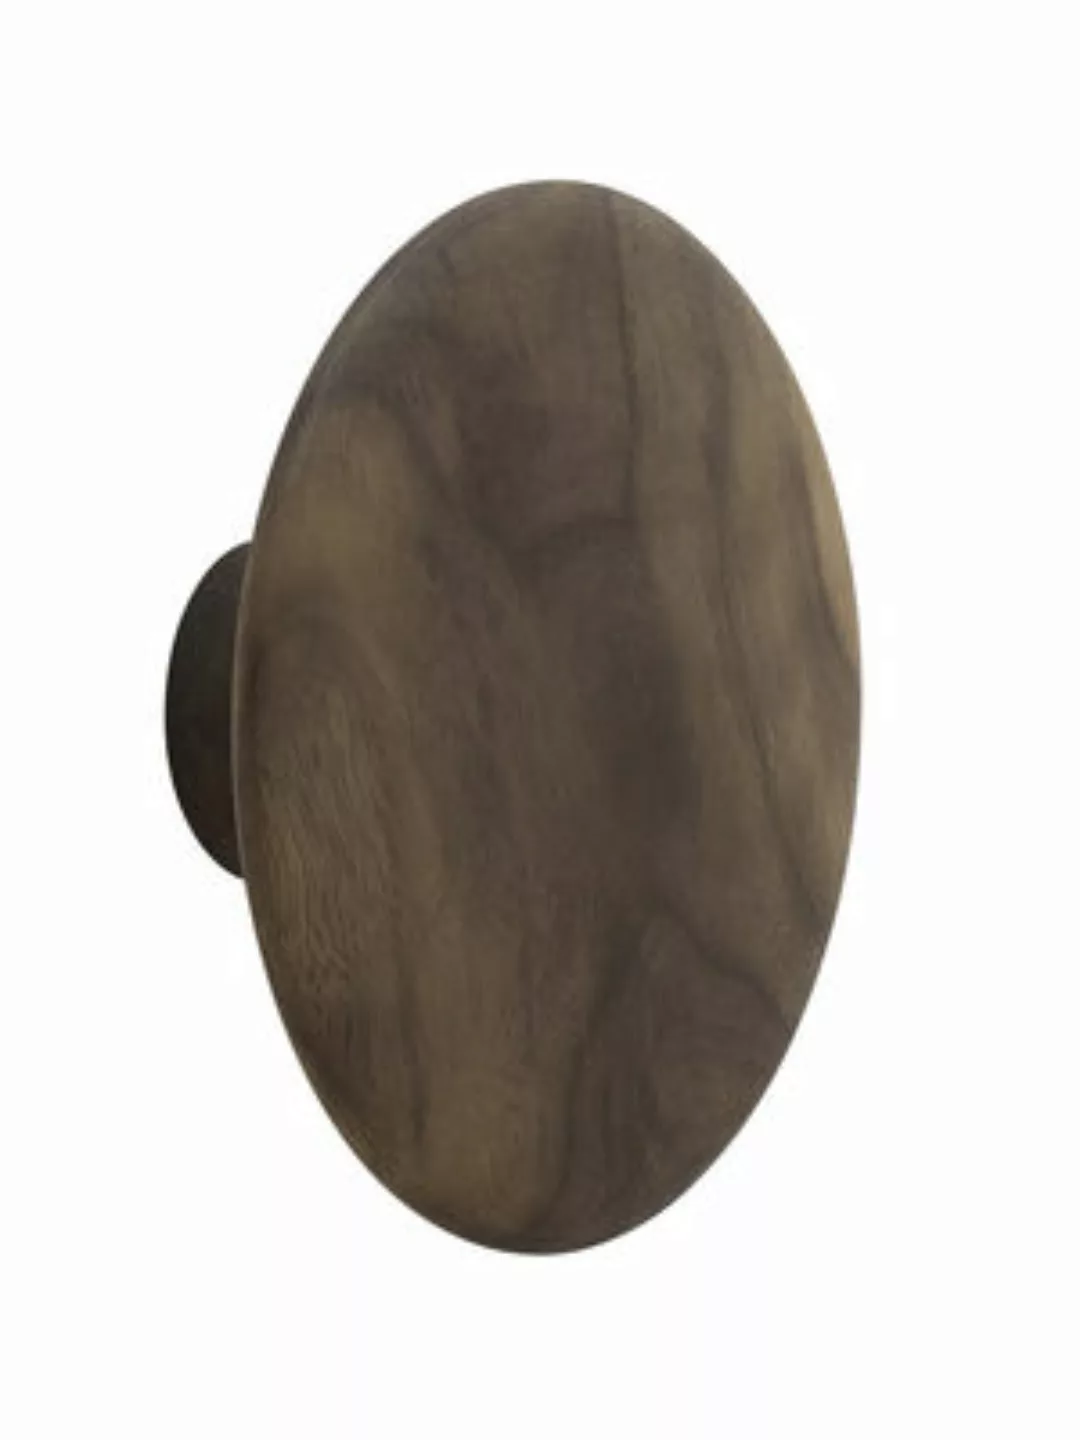 Wandhaken The Dots Wood holz natur / Größe L - Ø 17 cm - Muuto - Holz natur günstig online kaufen